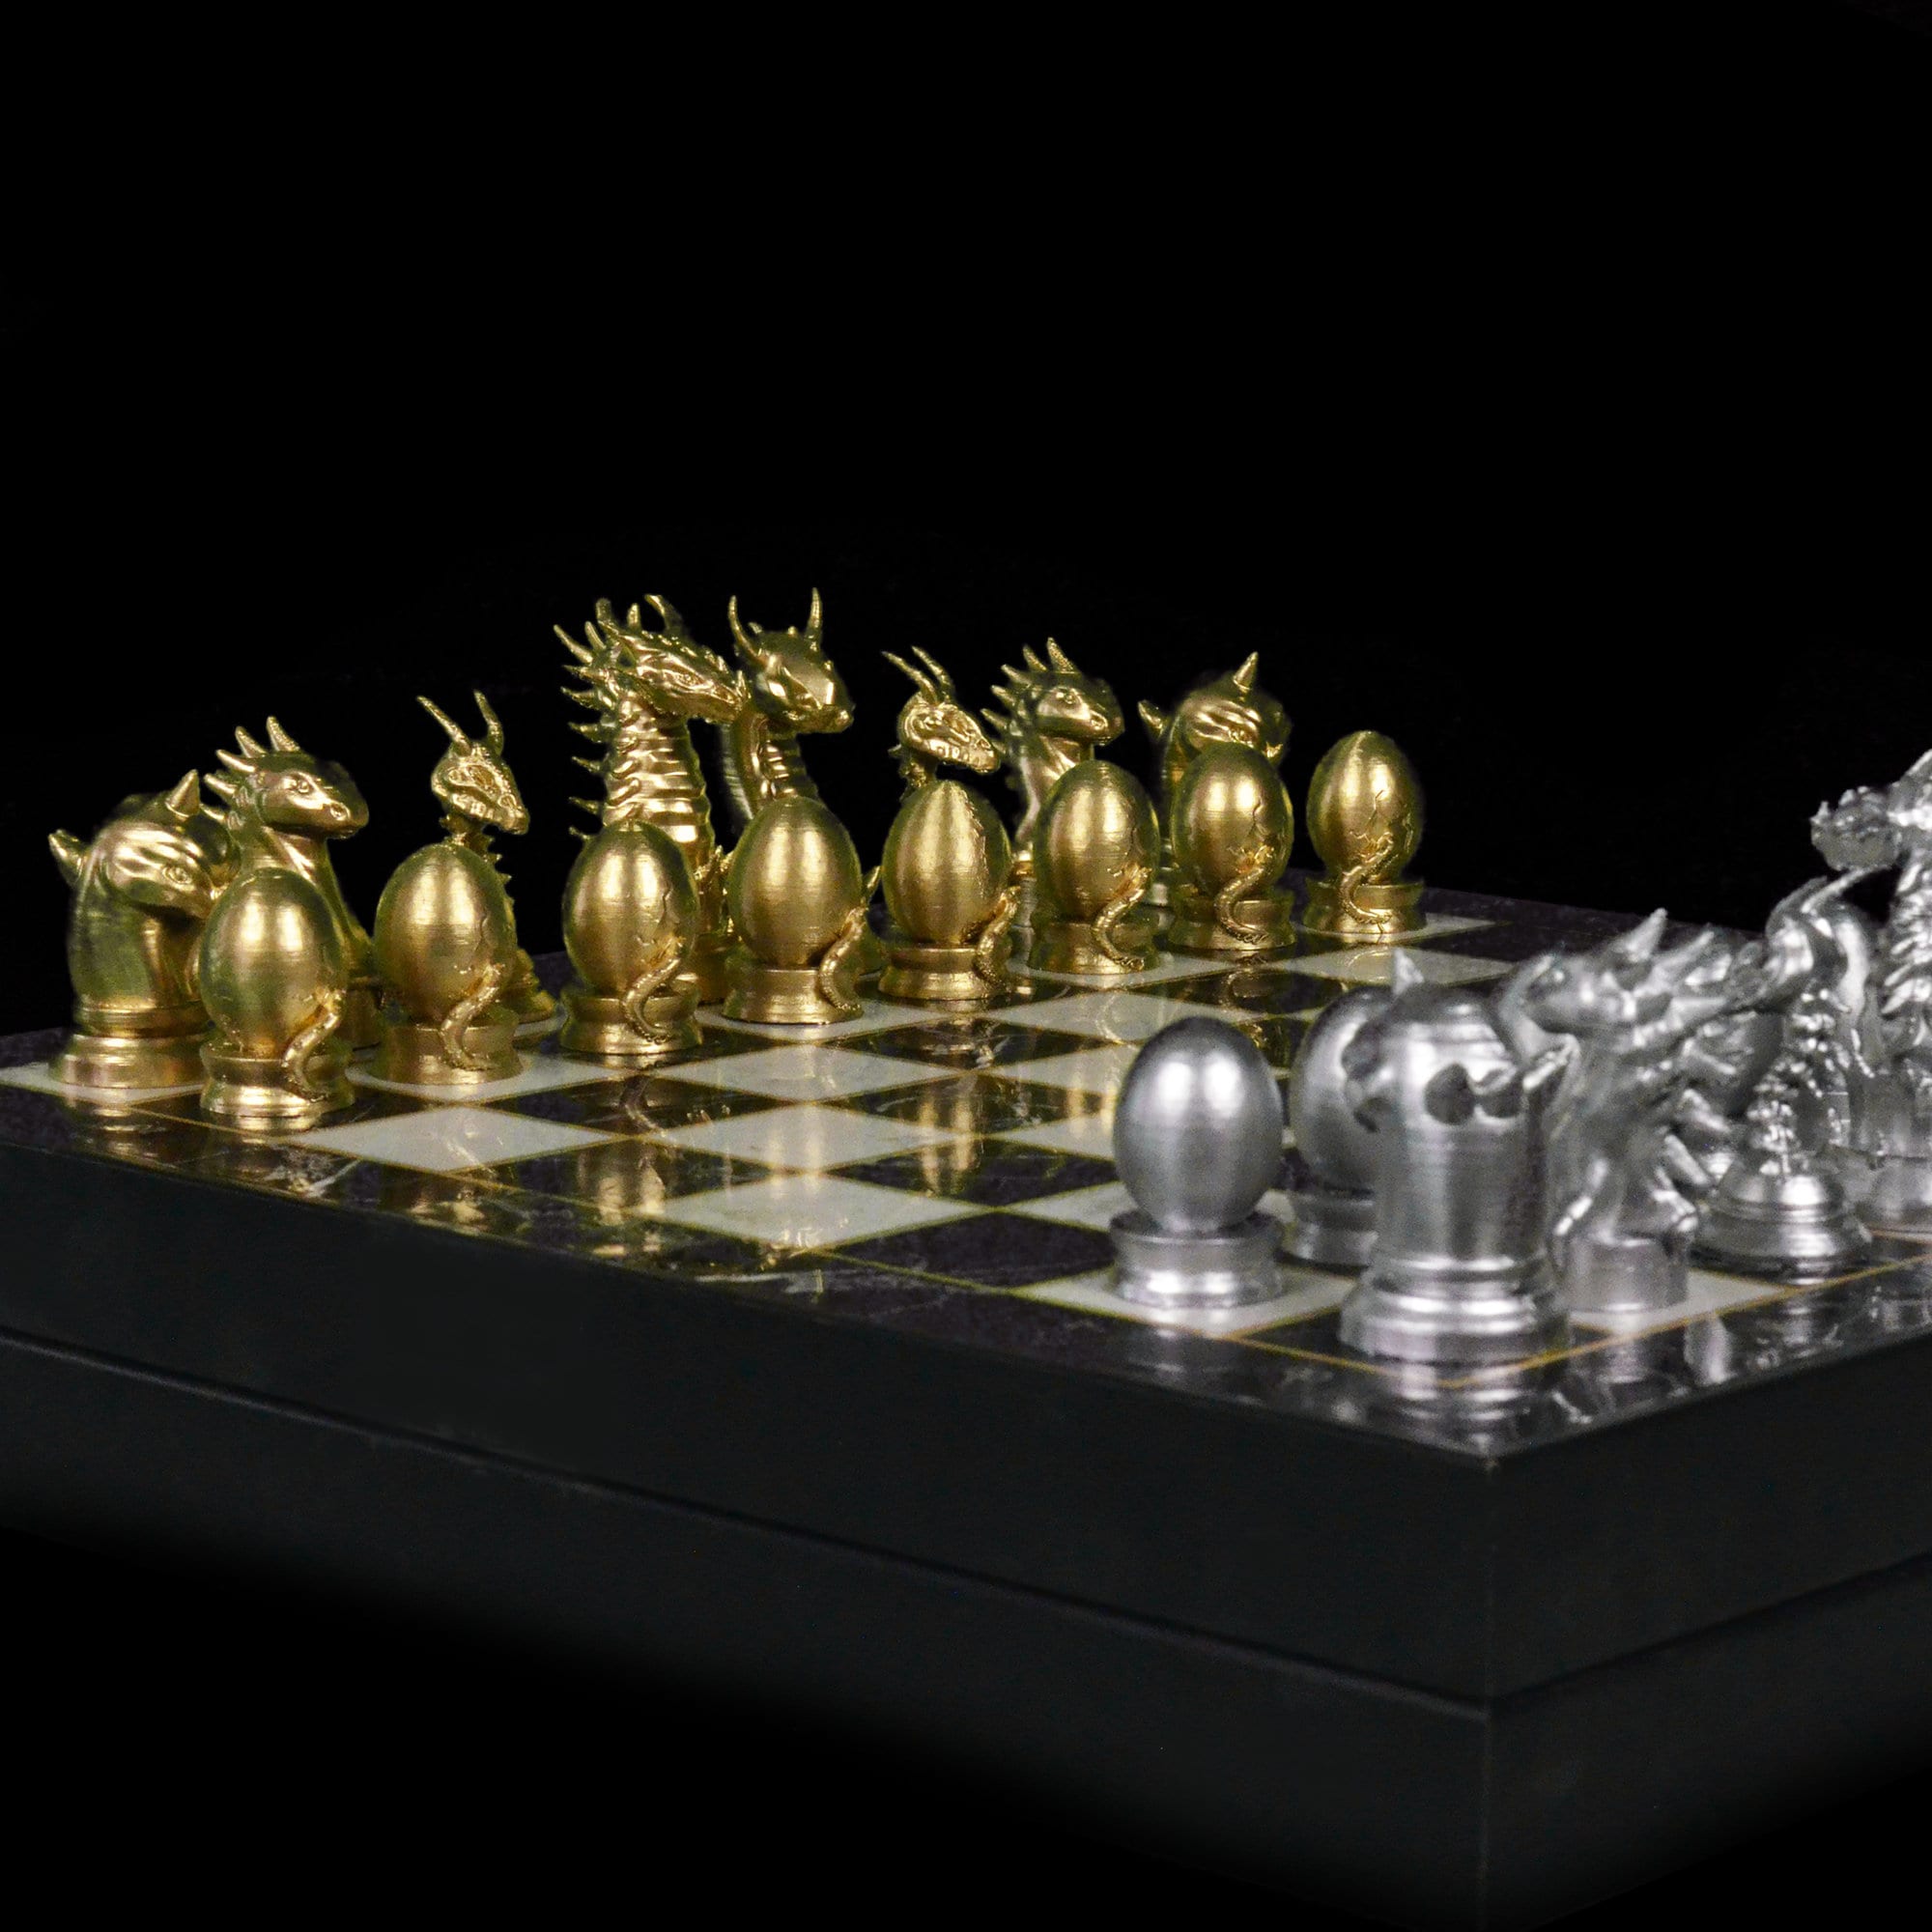 Tabuleiro de xadrez de madeira com peças de metal. xeque-mate.